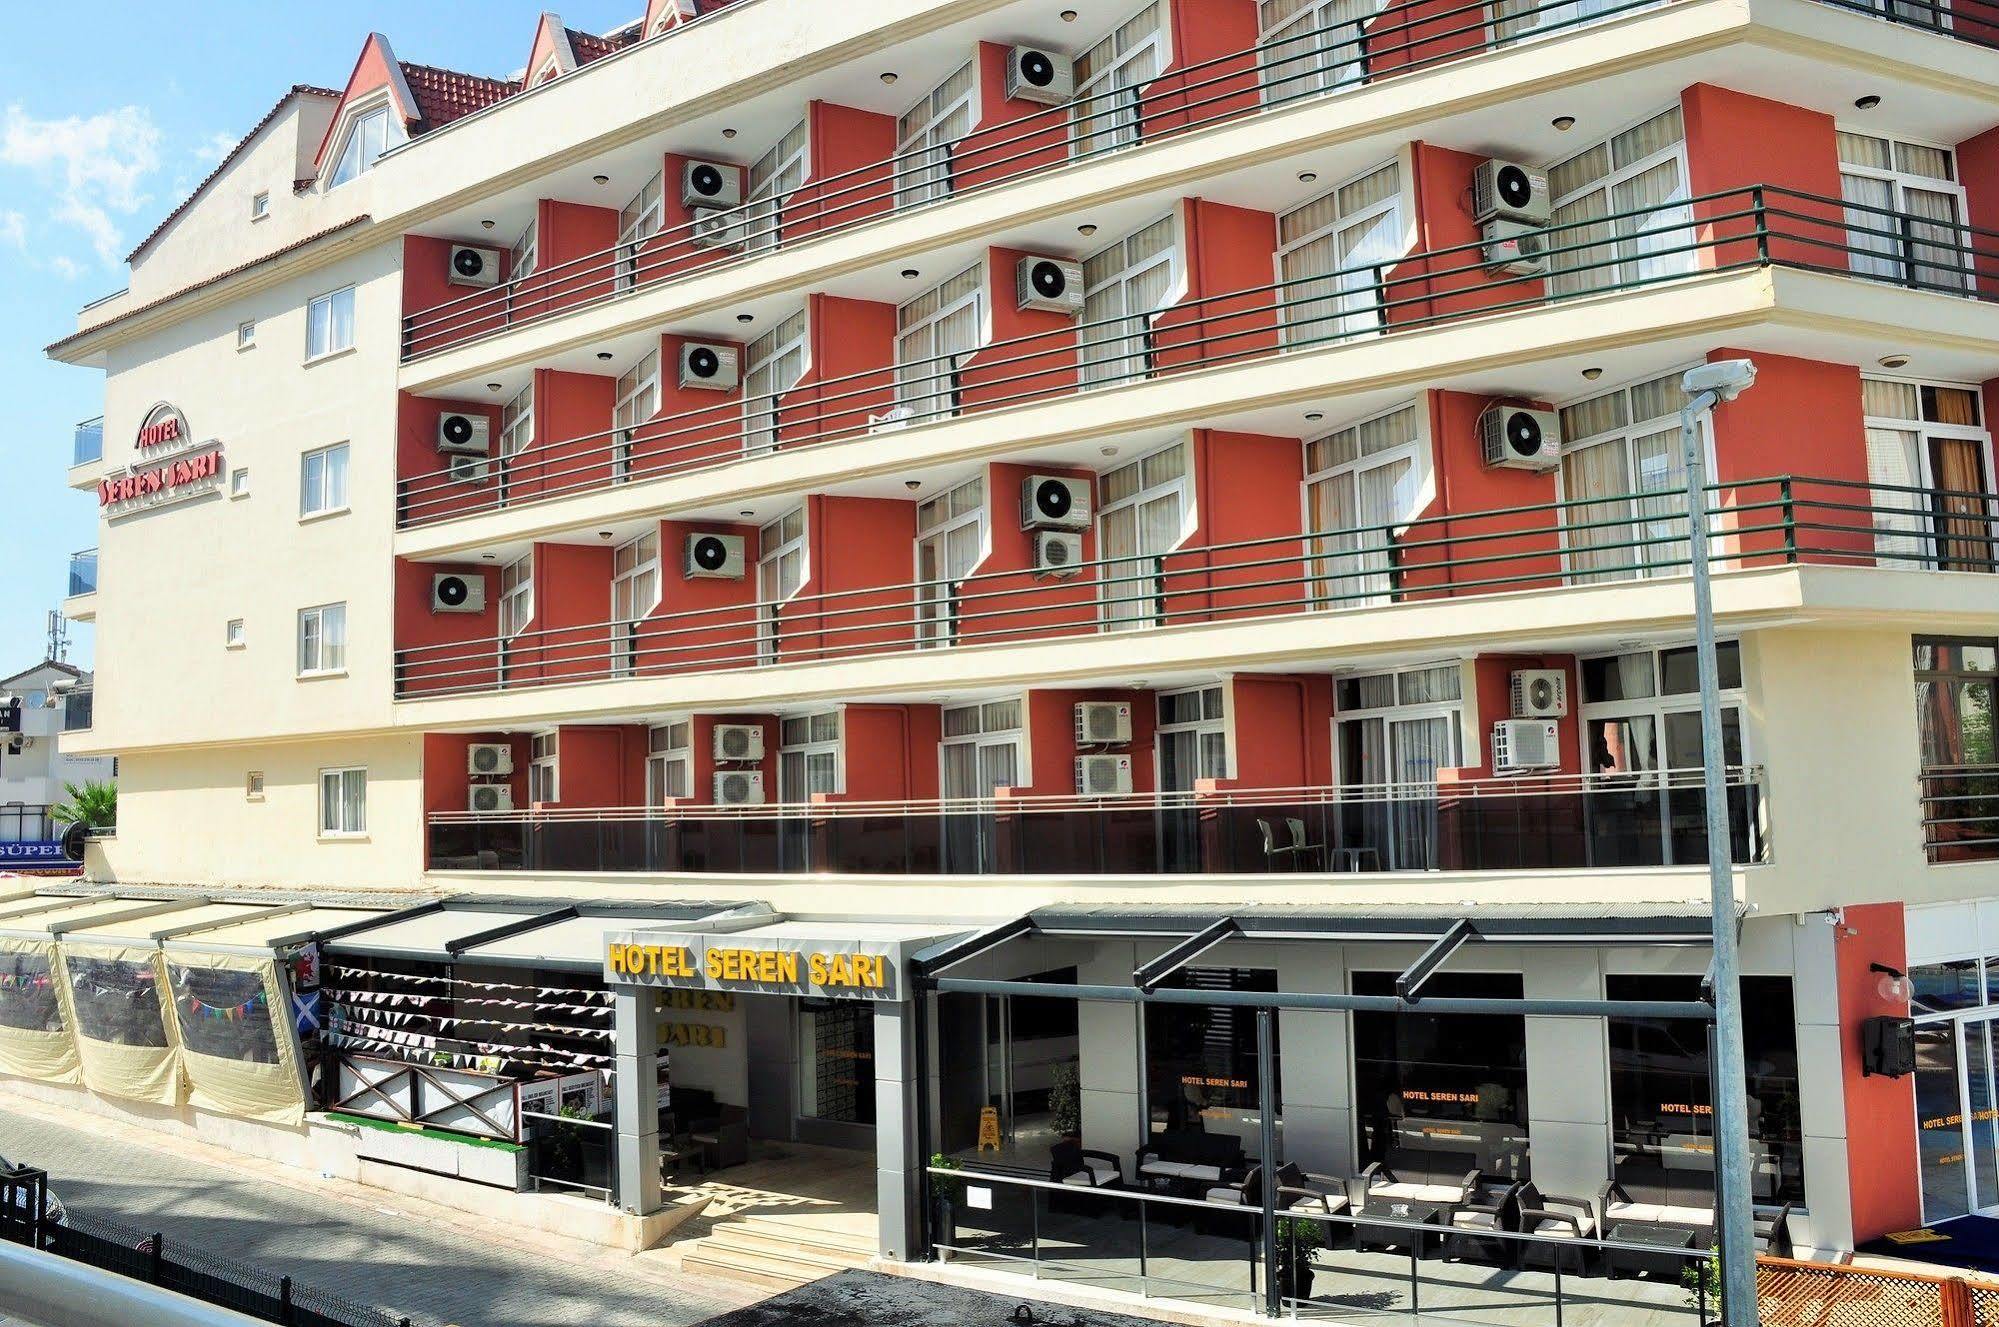 Seren Sari Hotel Marmaris Exterior photo